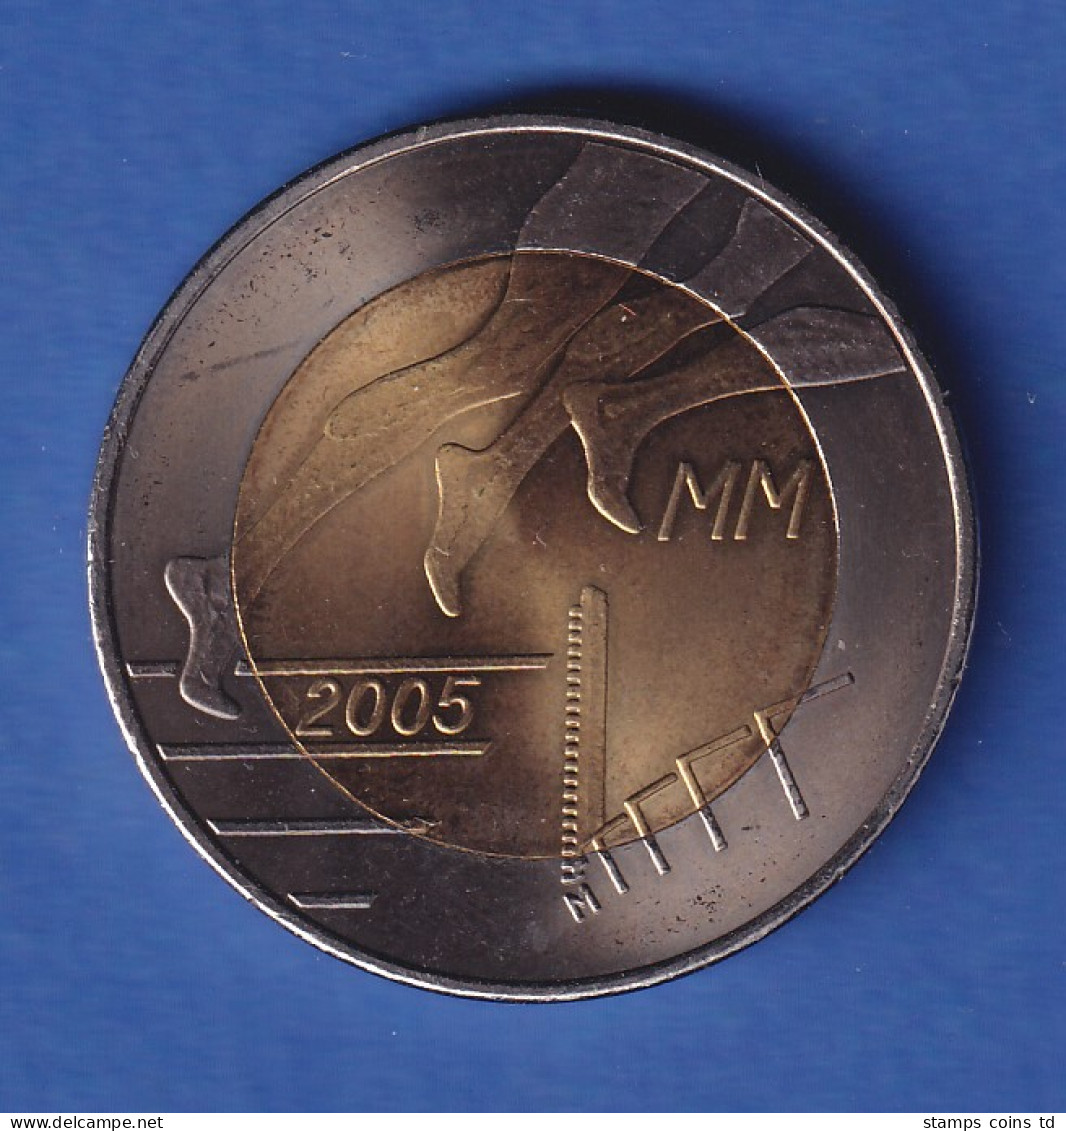 Finnland 2005 Leichtathletik-WM  5-Euro-Sondermünze  - Finnland